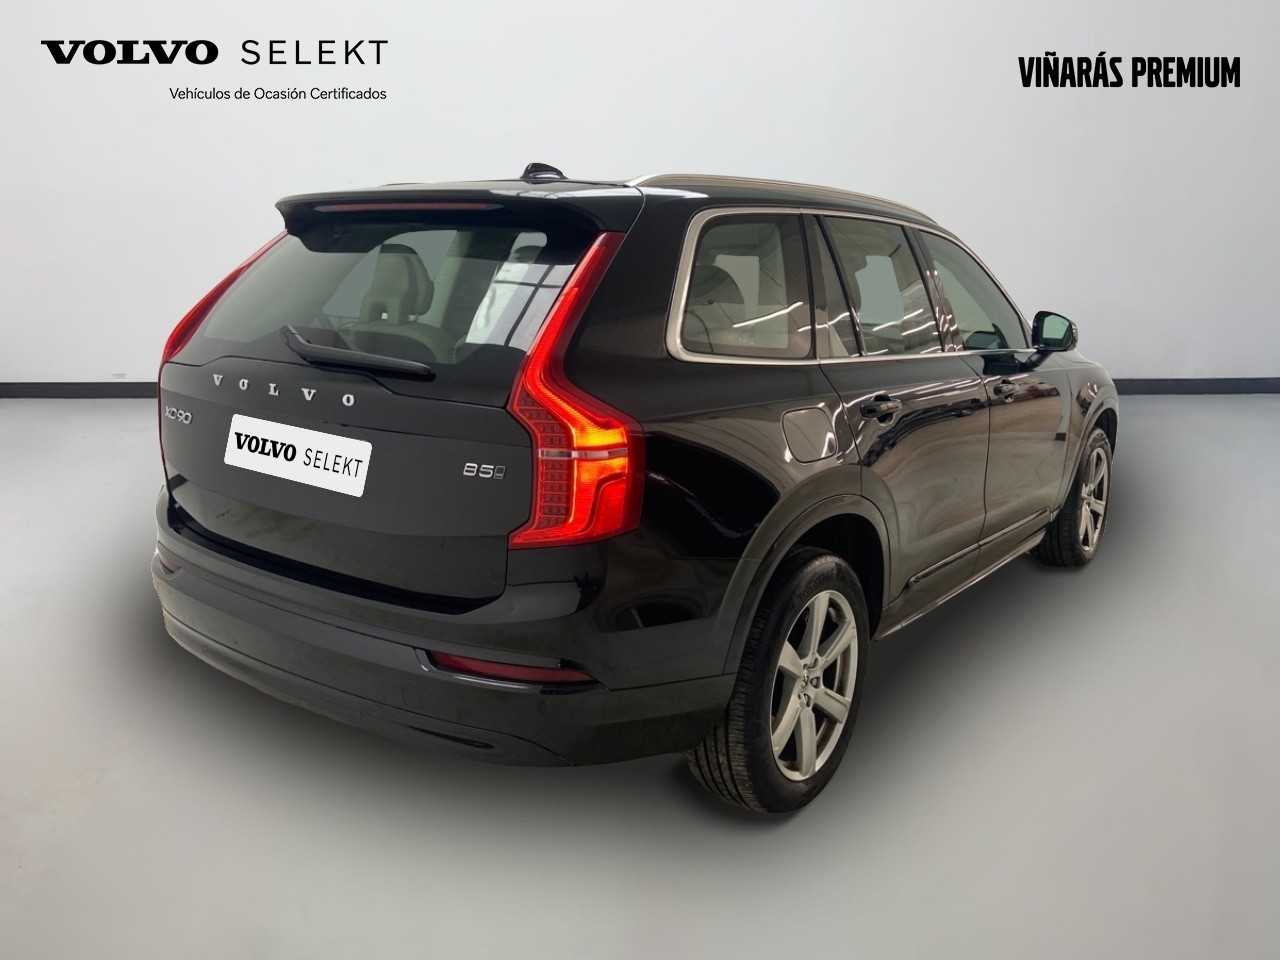 Volvo  XC90 Core, B5 (diesel) AWD, Diésel, 7 Asientos